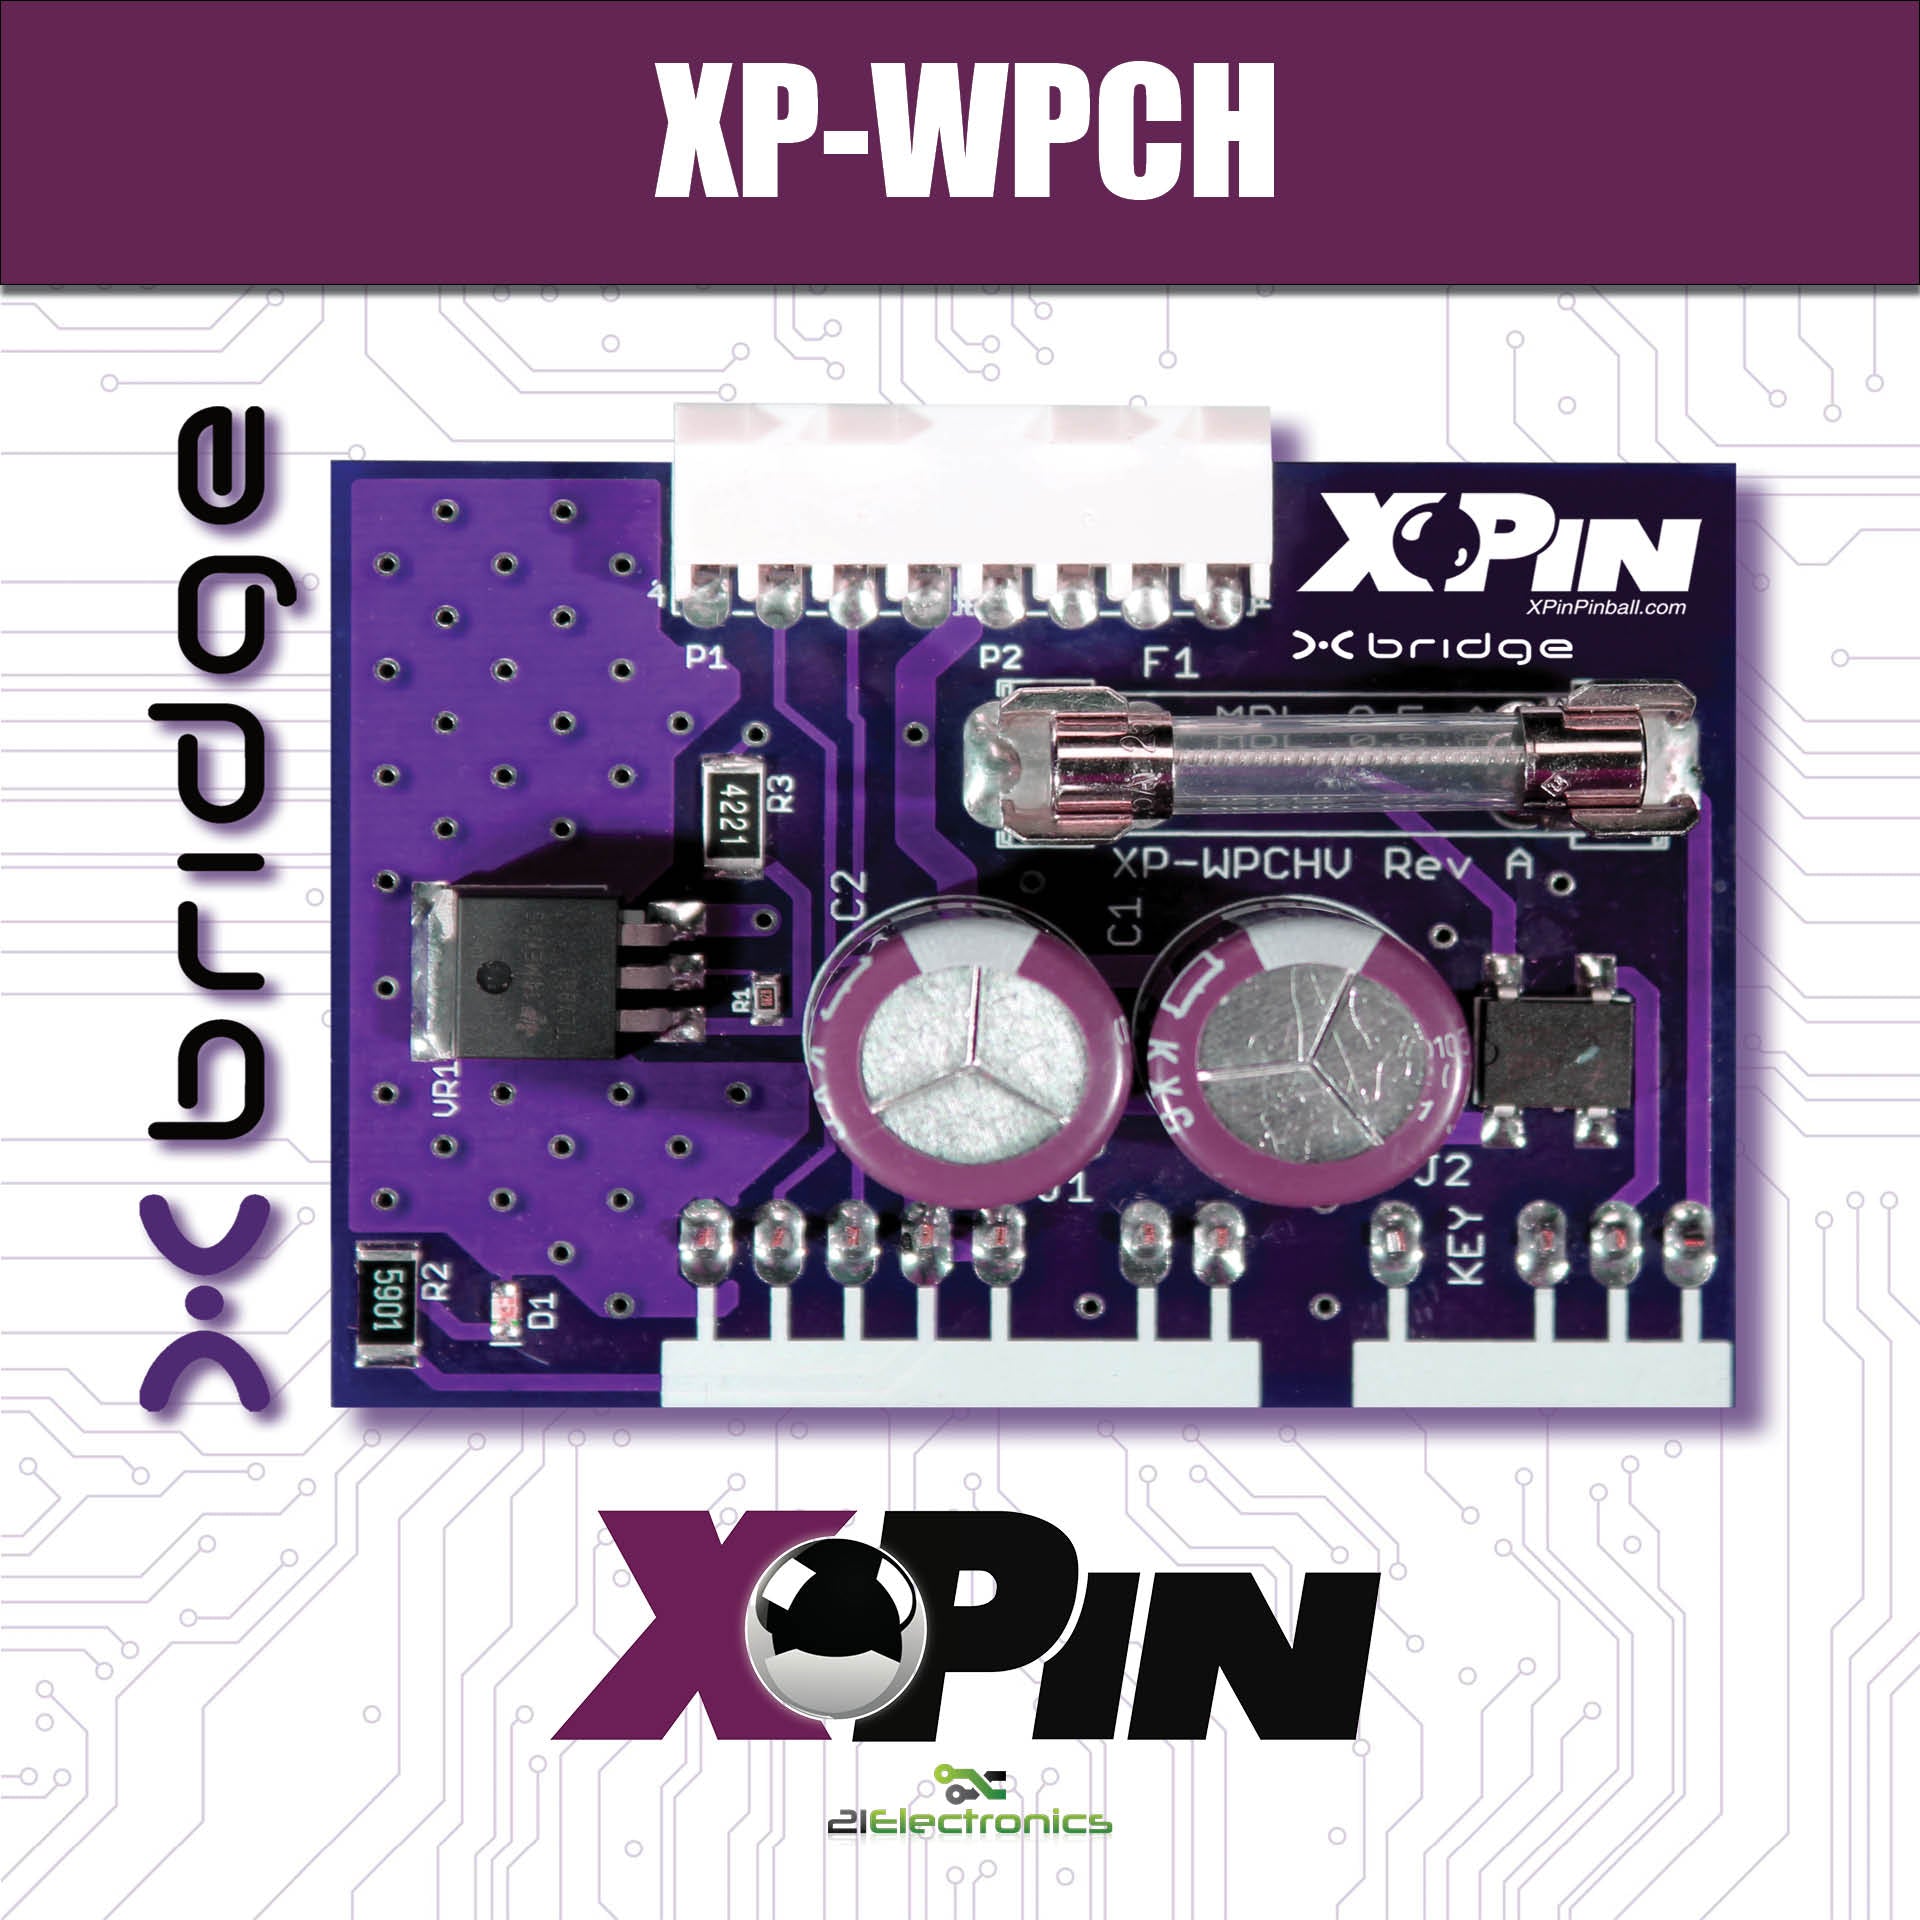 XP-WPCHV / X-BRIDGE: WPC95 POWER SUPPLY